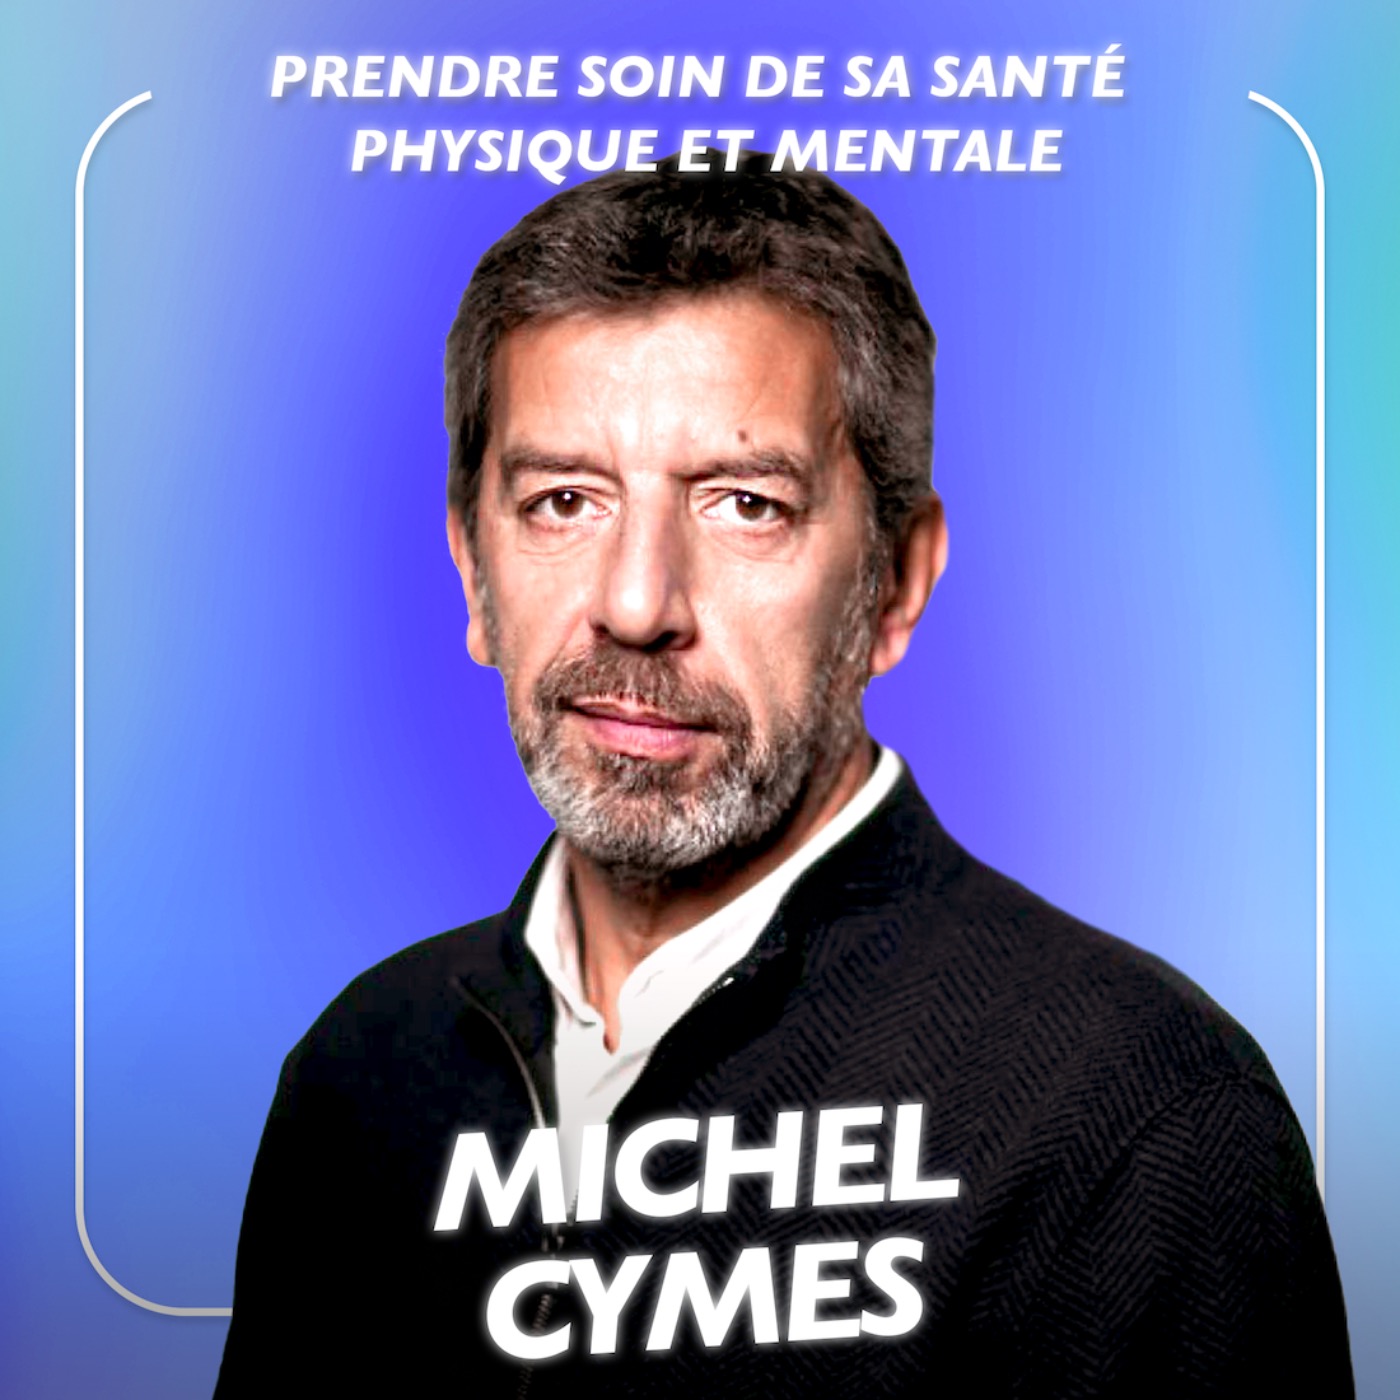 Michel Cymès, Médecin - Les conseils les plus efficaces pour prendre soin de sa santé physique et mentale